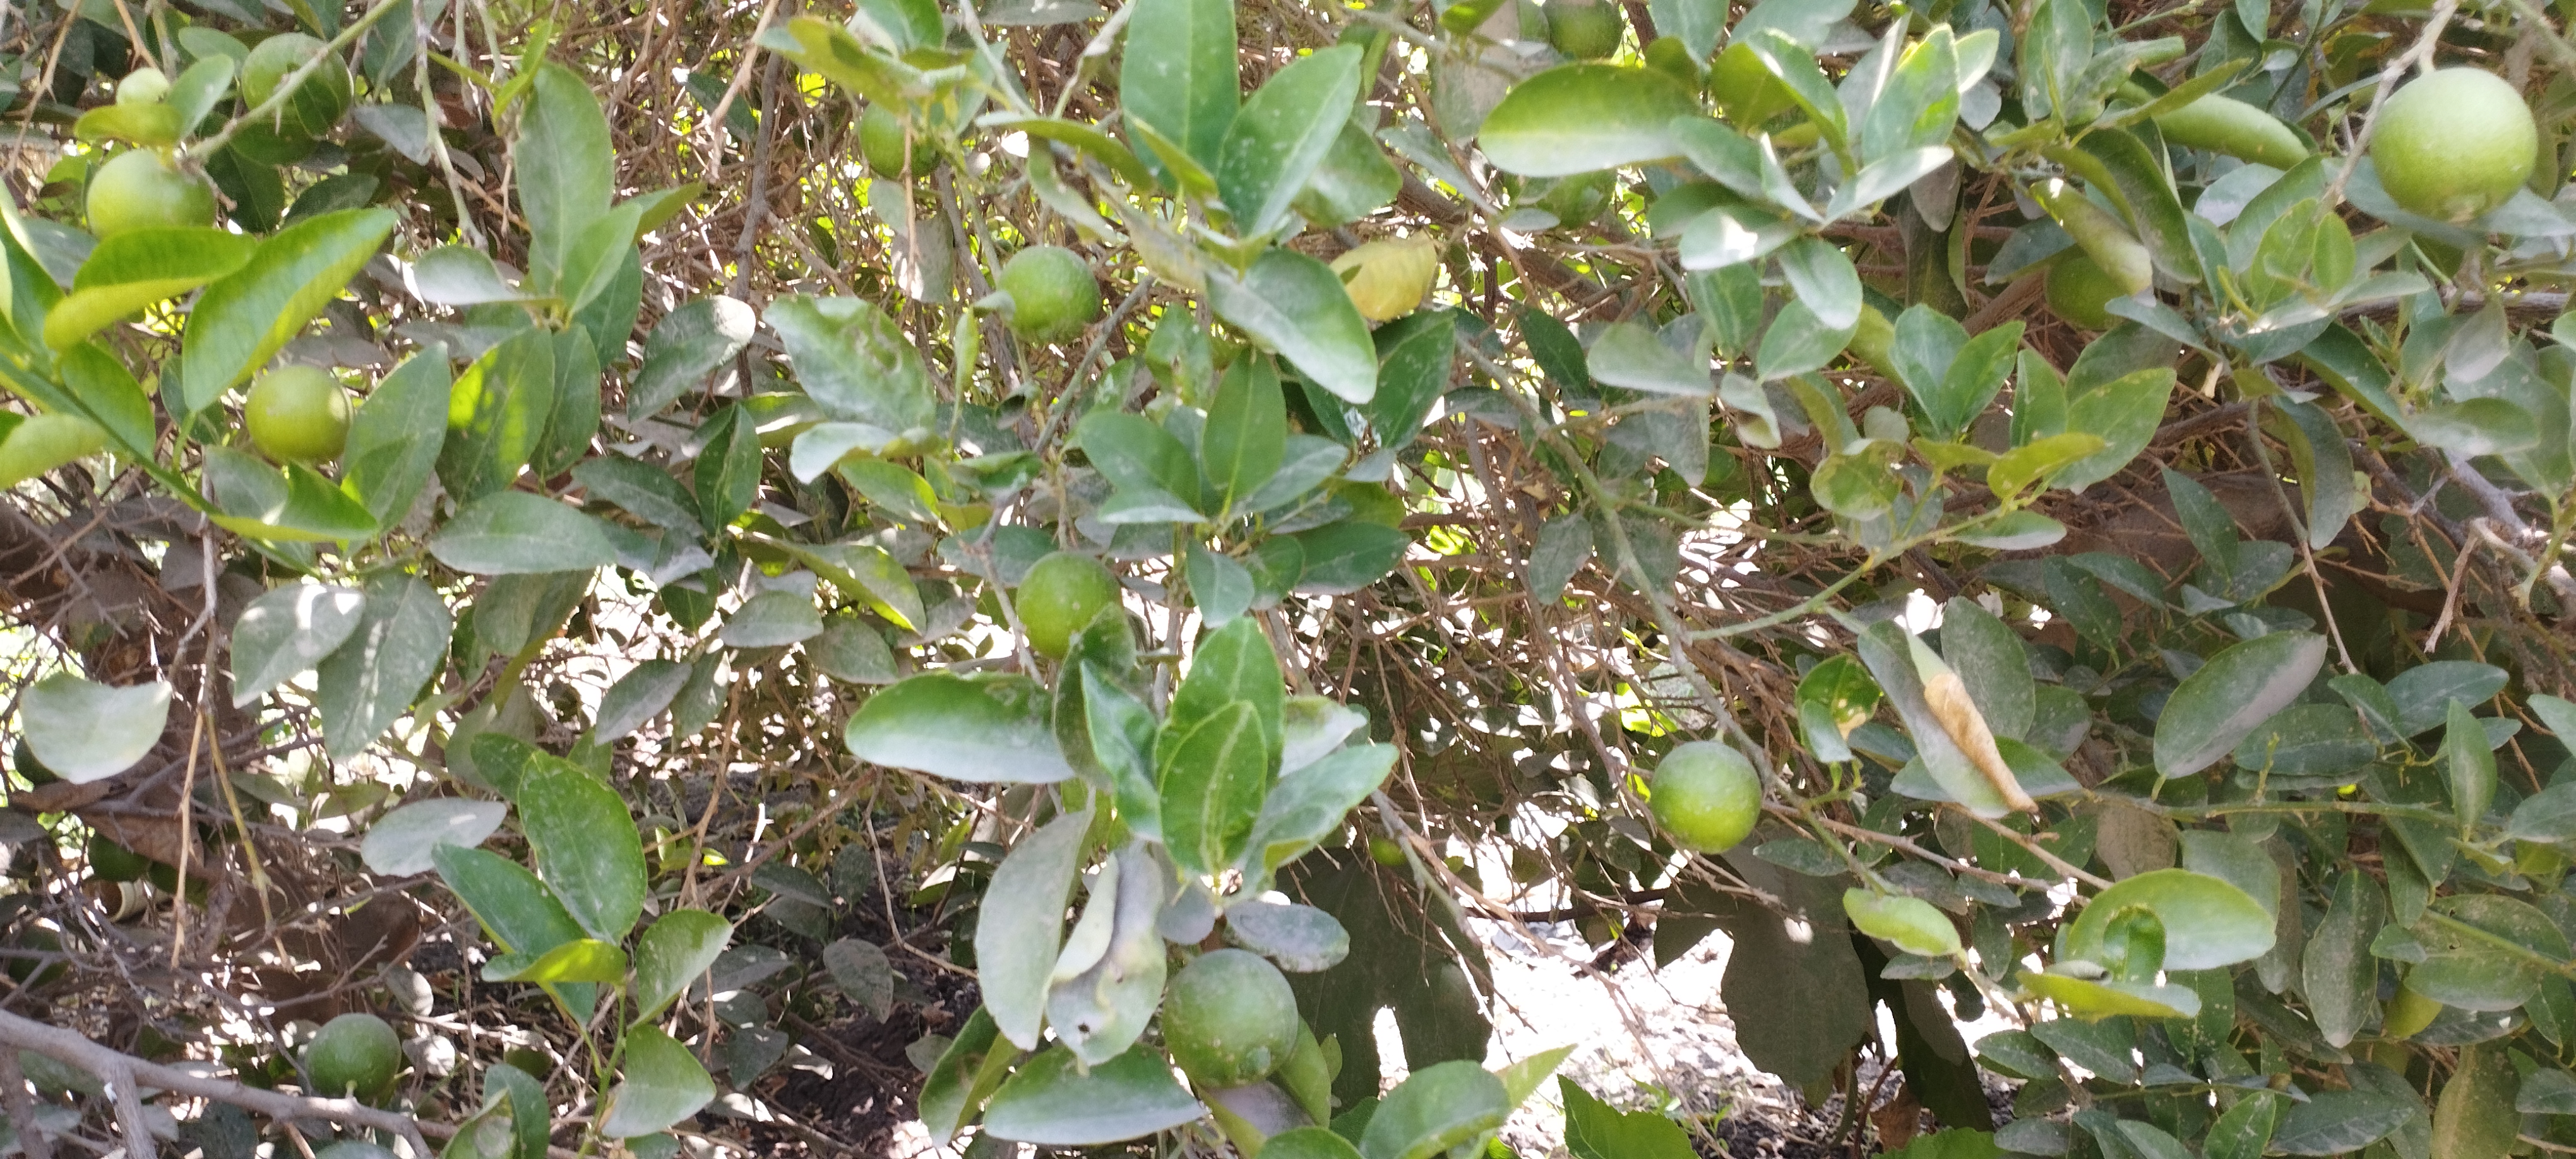 اشجار الليمون تزين مزارع المنيا (3)